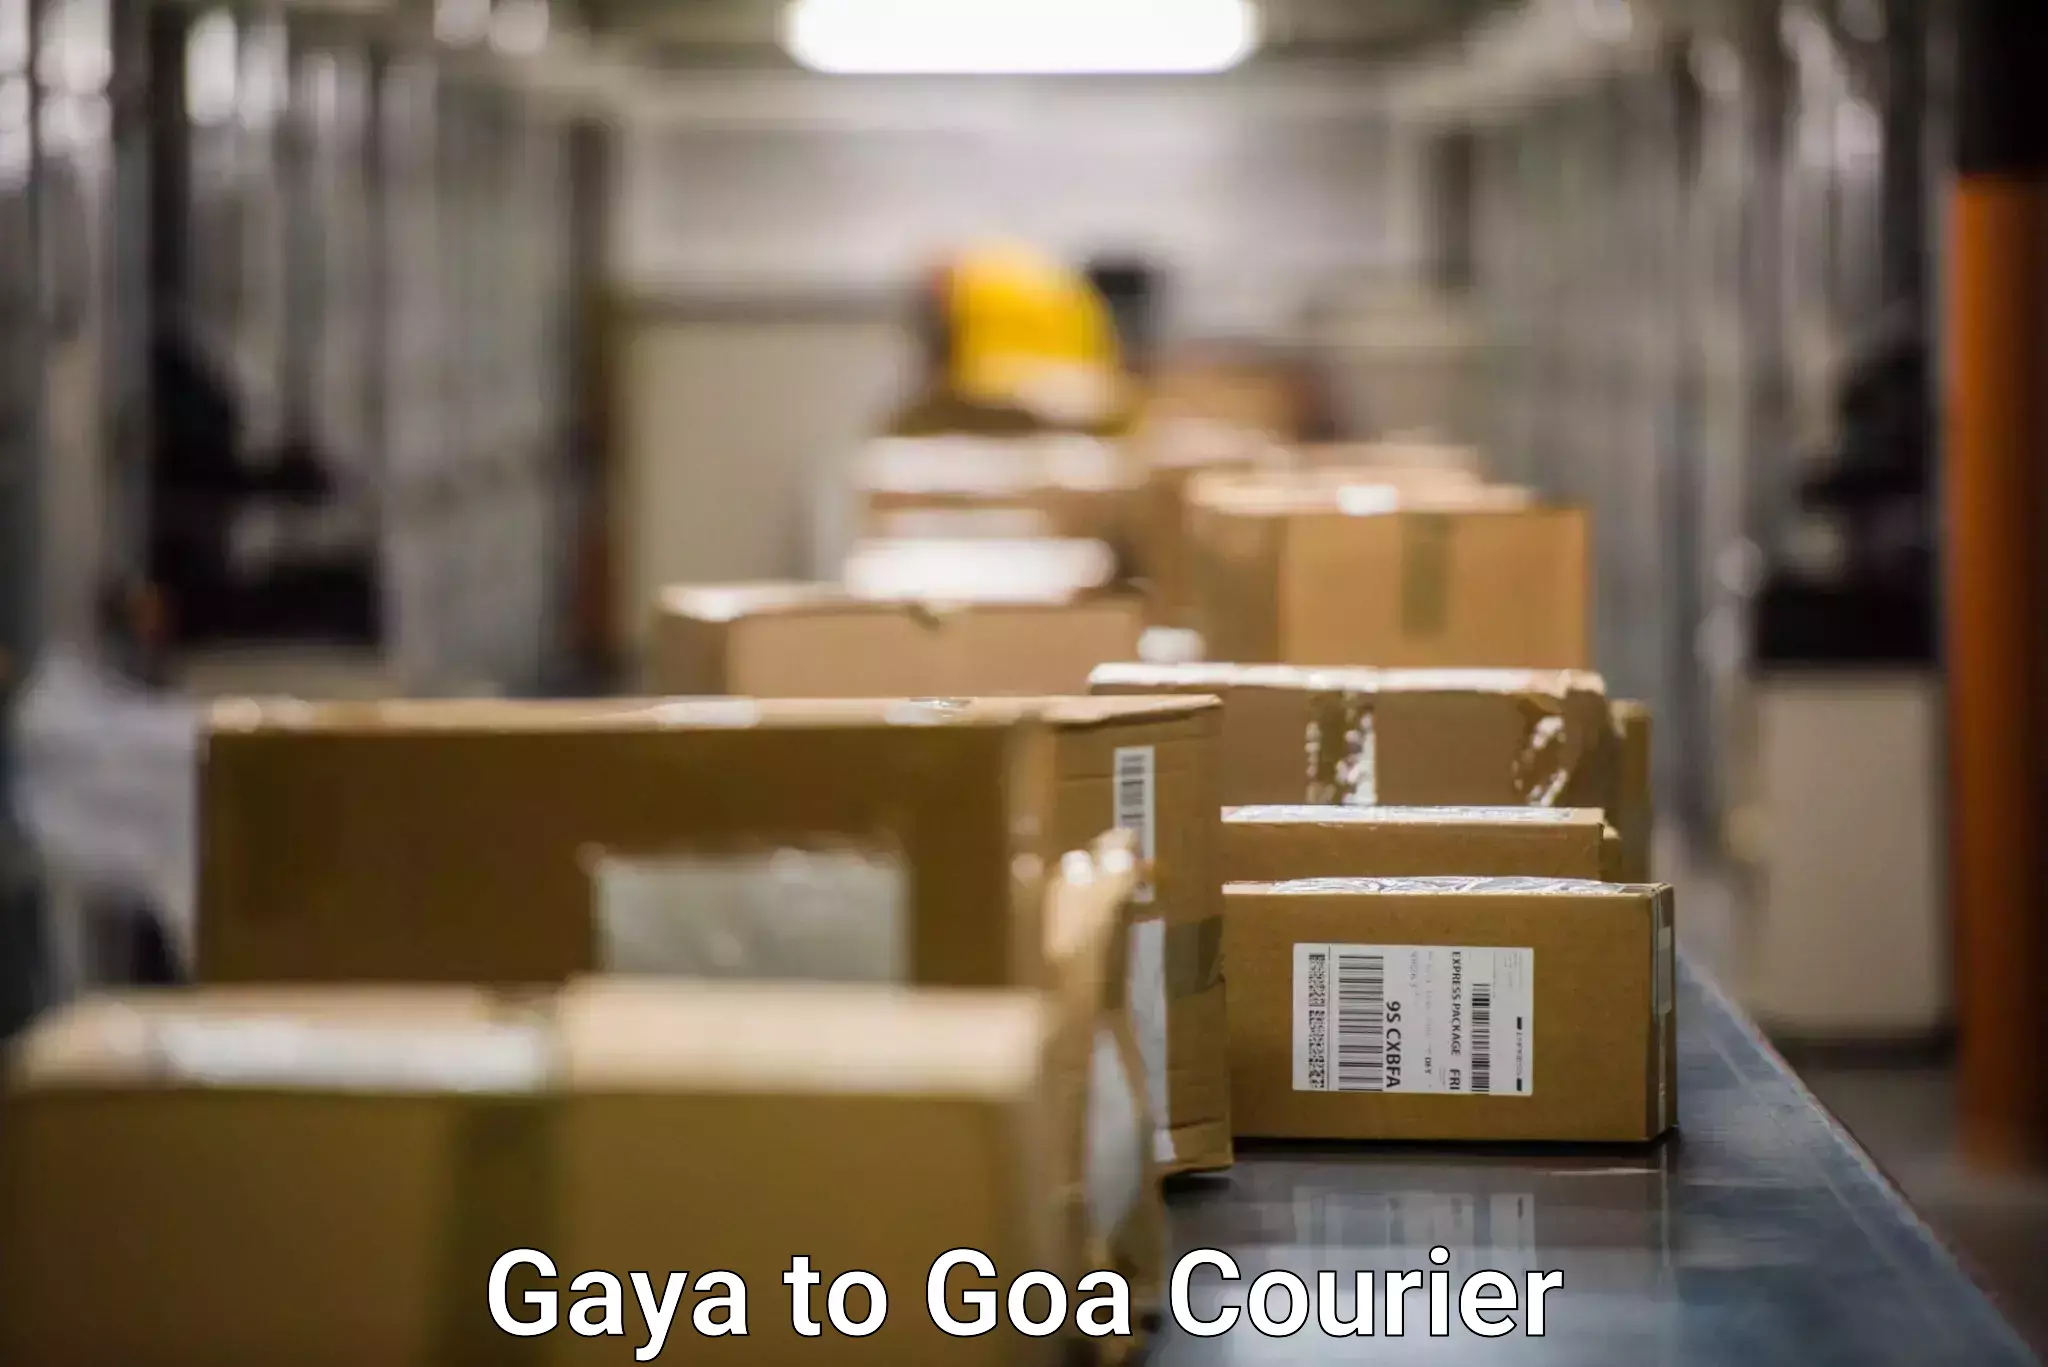 Courier insurance Gaya to Goa